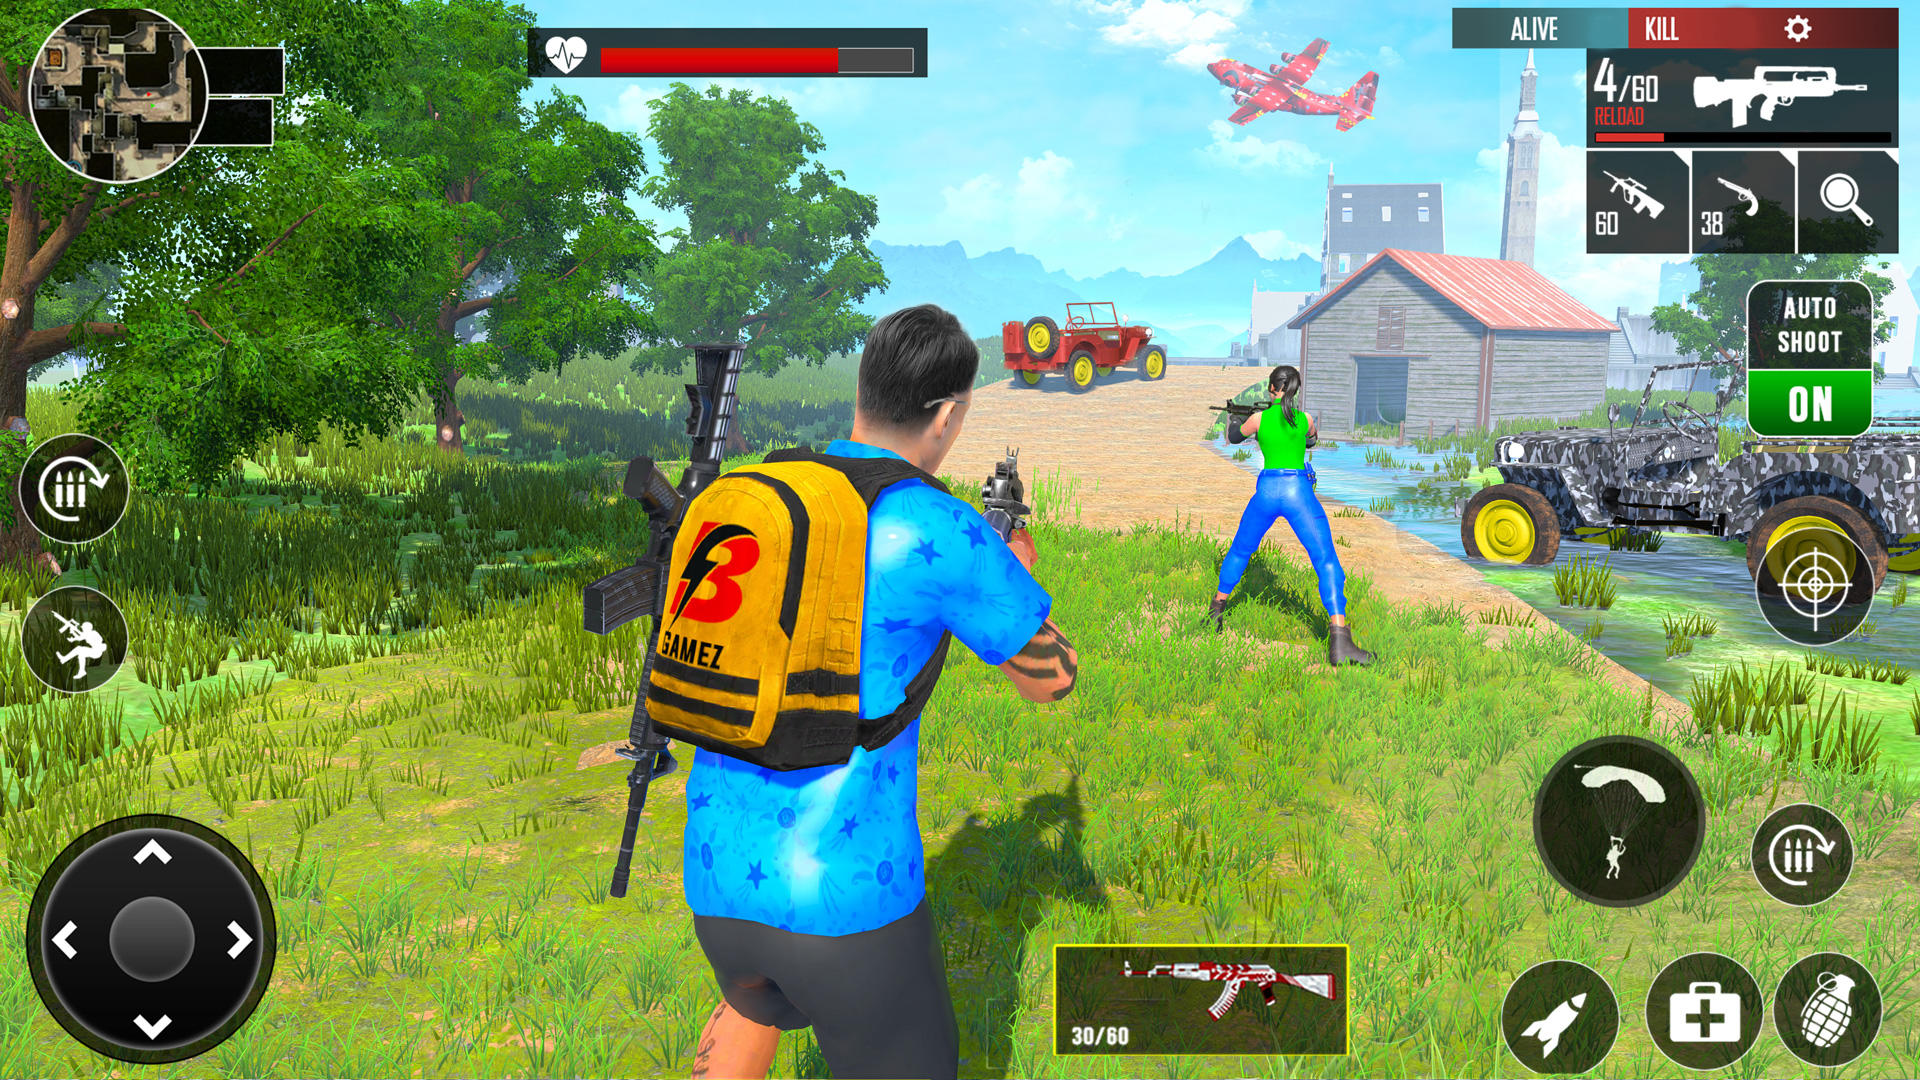 Screenshot 1 of Giochi sparatutto in prima persona: giochi di armi 3.5